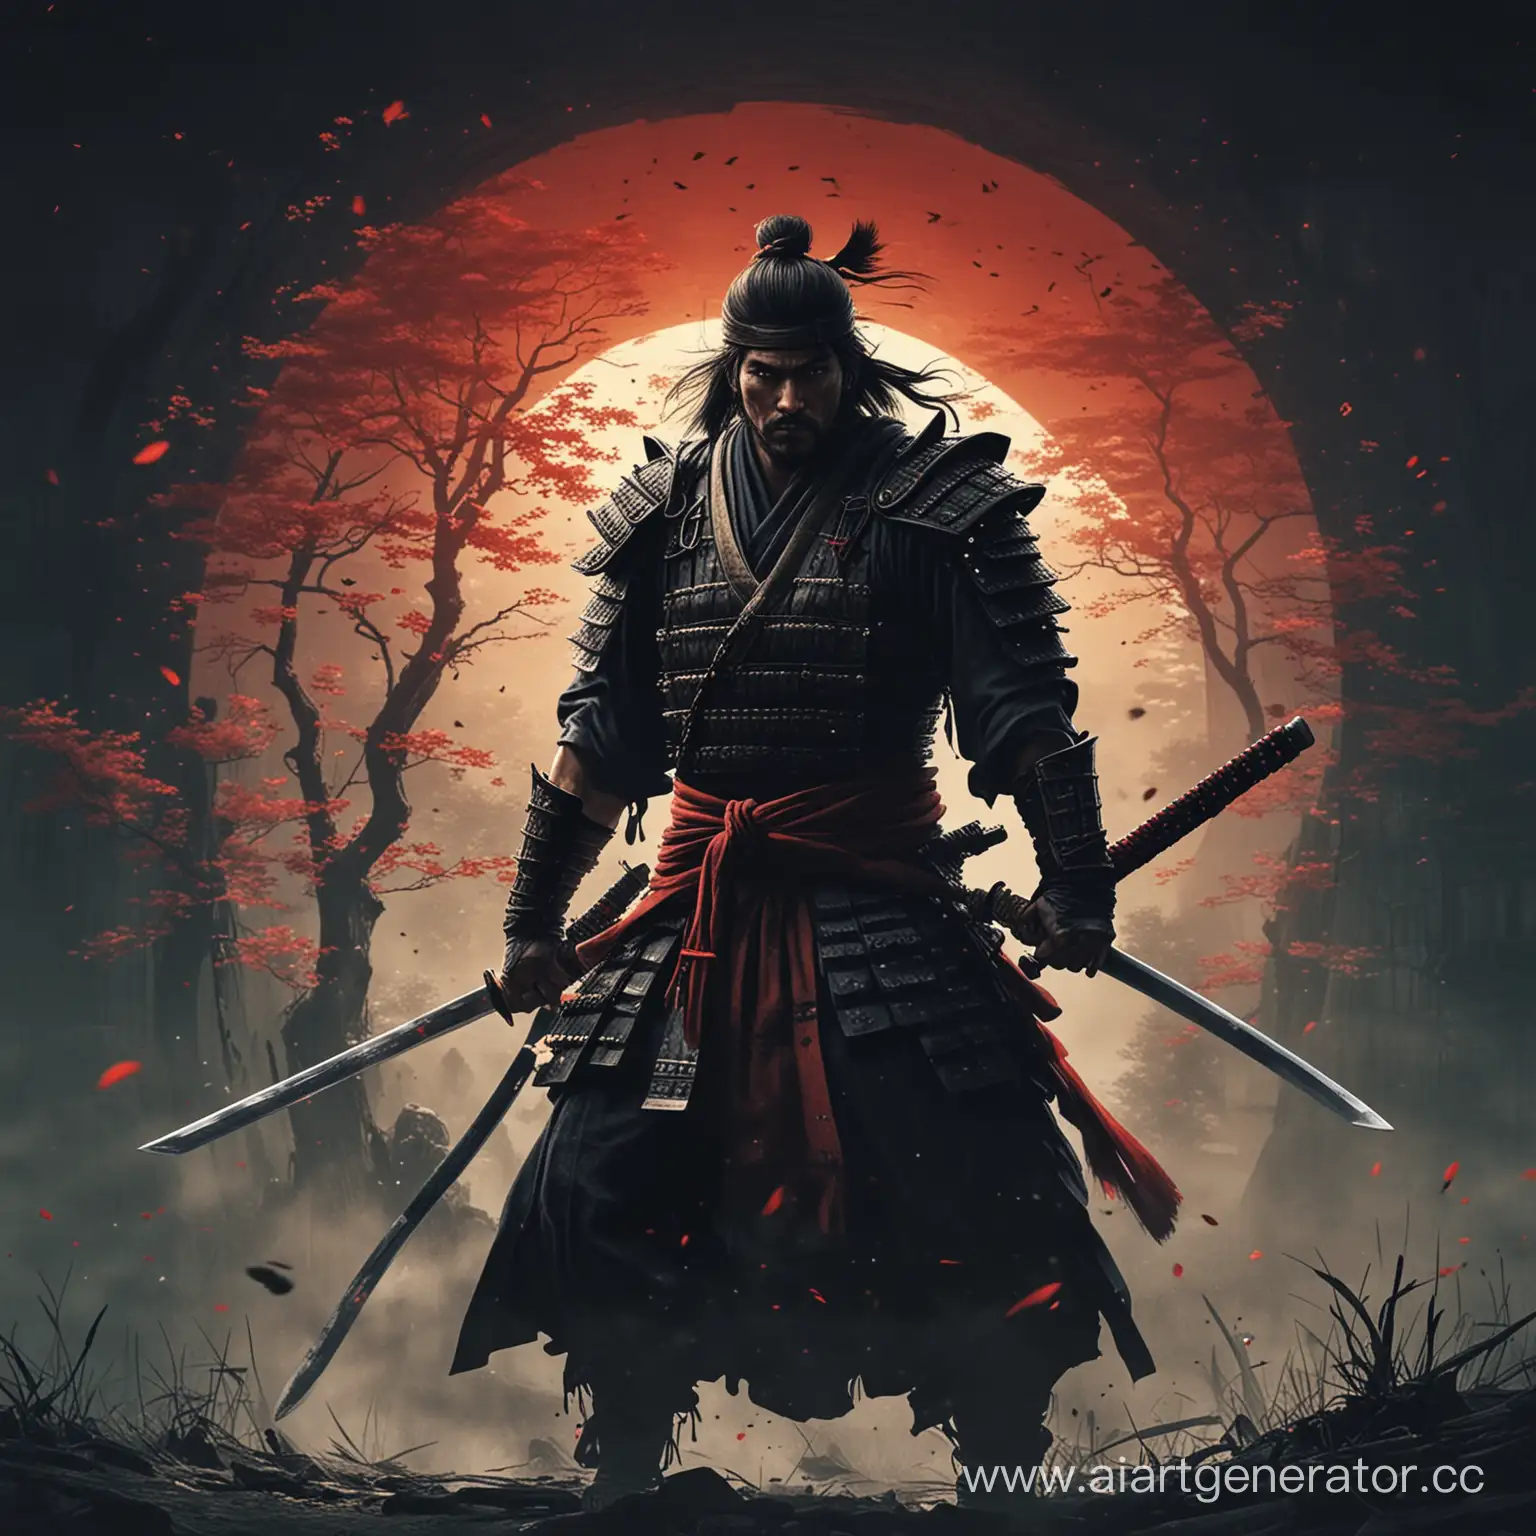 Traditional-Samurai-Warrior-as-Screensaver-for-Windows